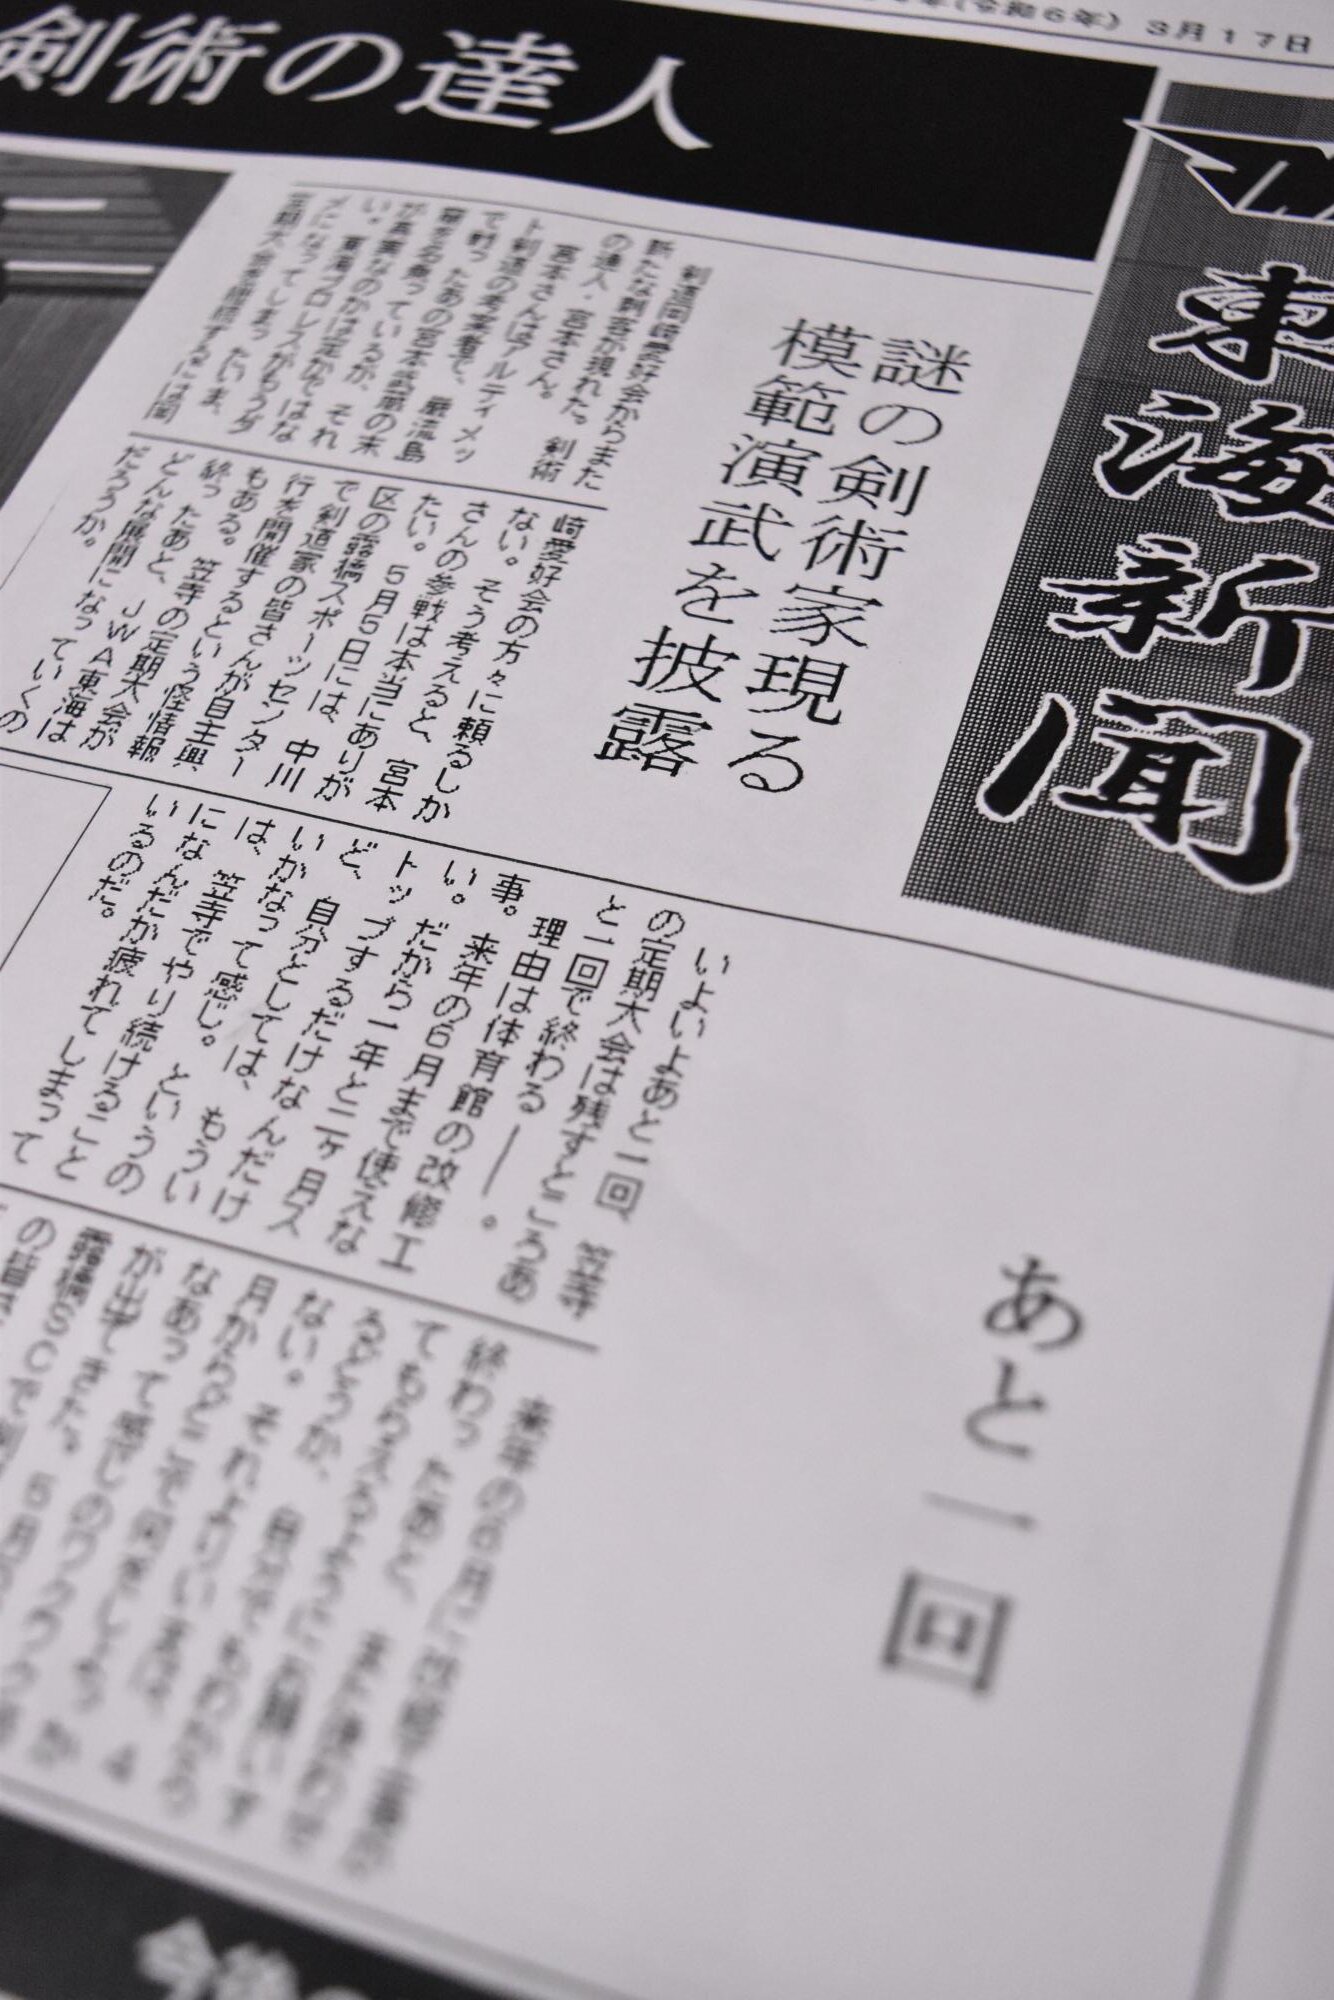 試合会場で配布される「JWA東海新聞」。「笠寺（会場の所在地の地名）でやり続けることになんだか疲れてしまっているのだ」と悲観的なフレーズが･･･